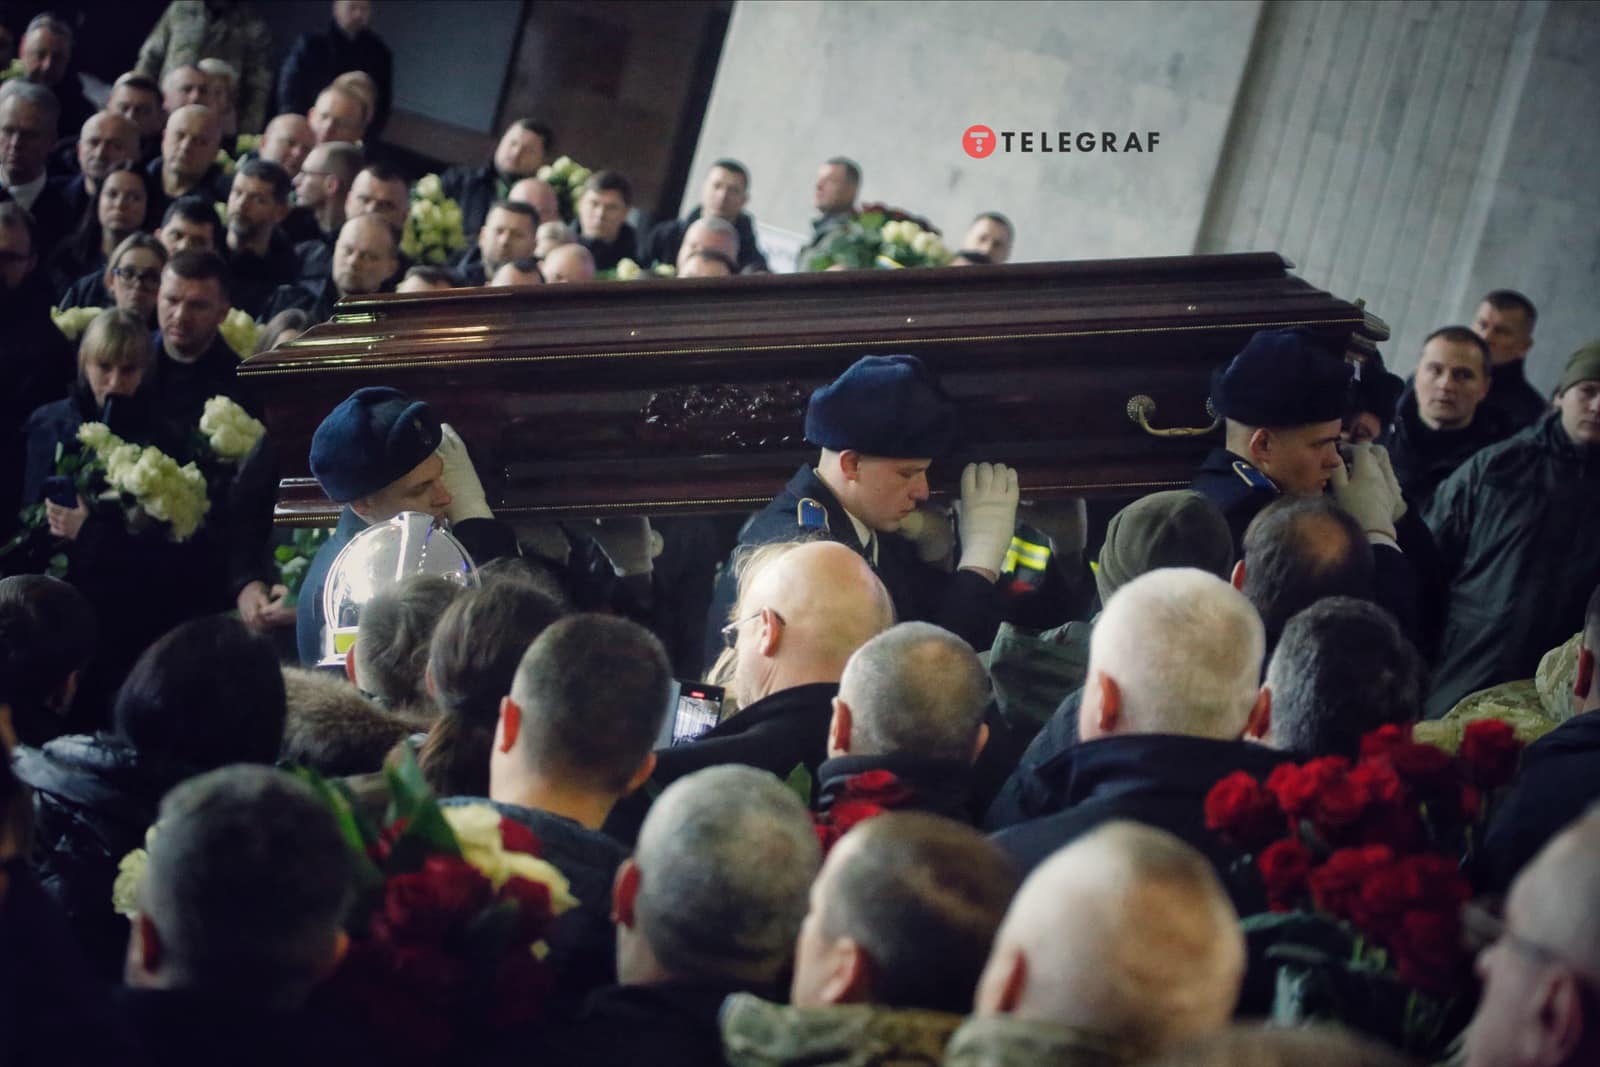 Прощання із загиблими під час авіакатастрофи. Фото: Yan Dobronosov